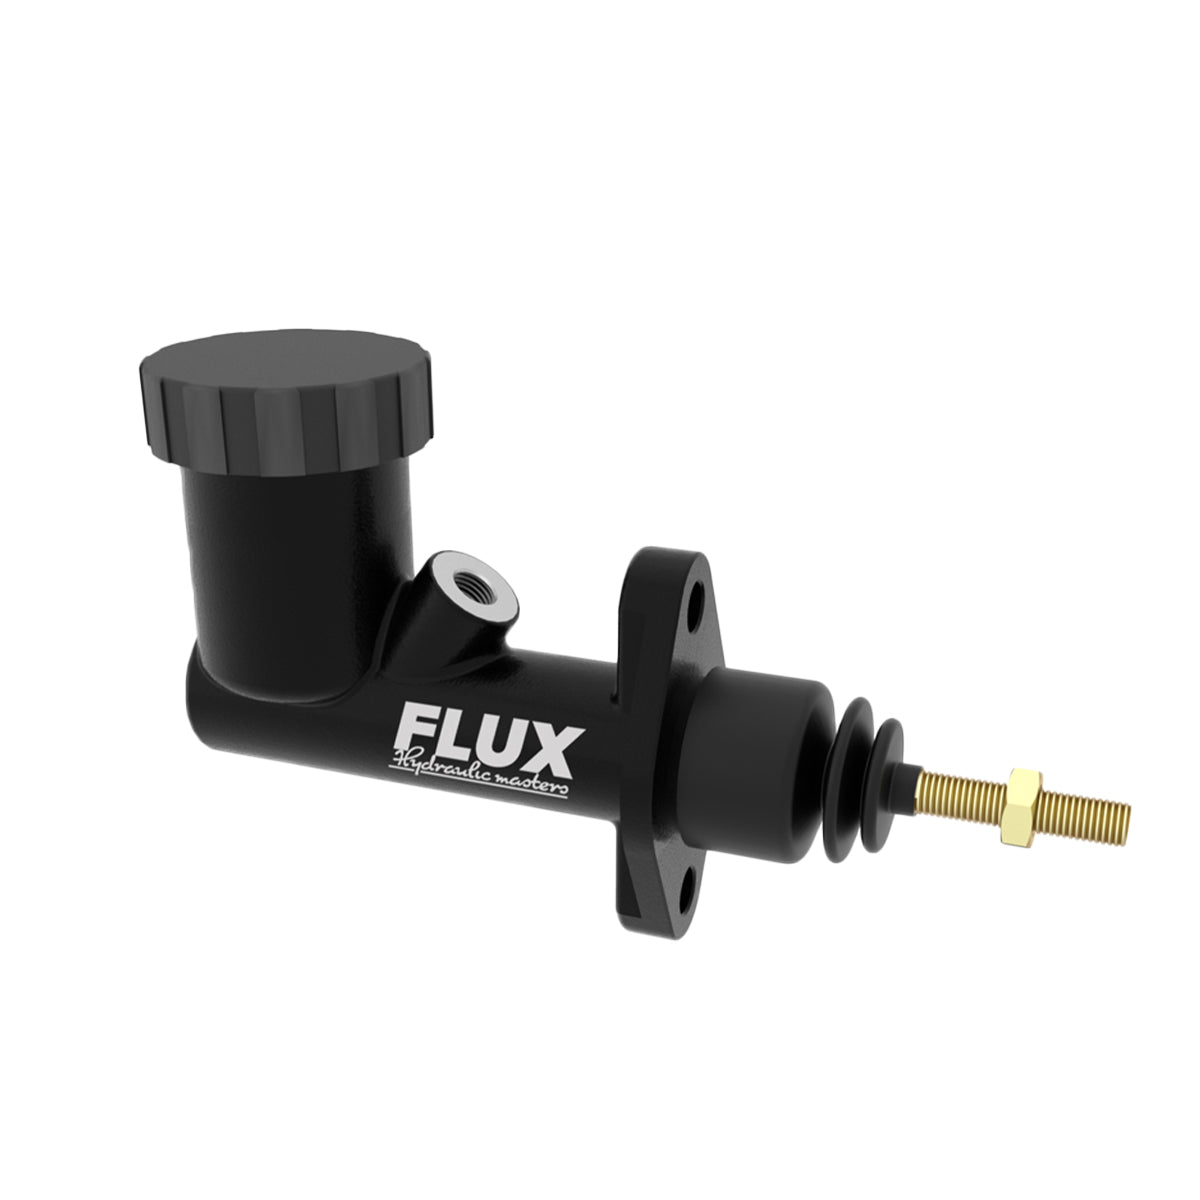 Flux Hydraulic Master 7/8